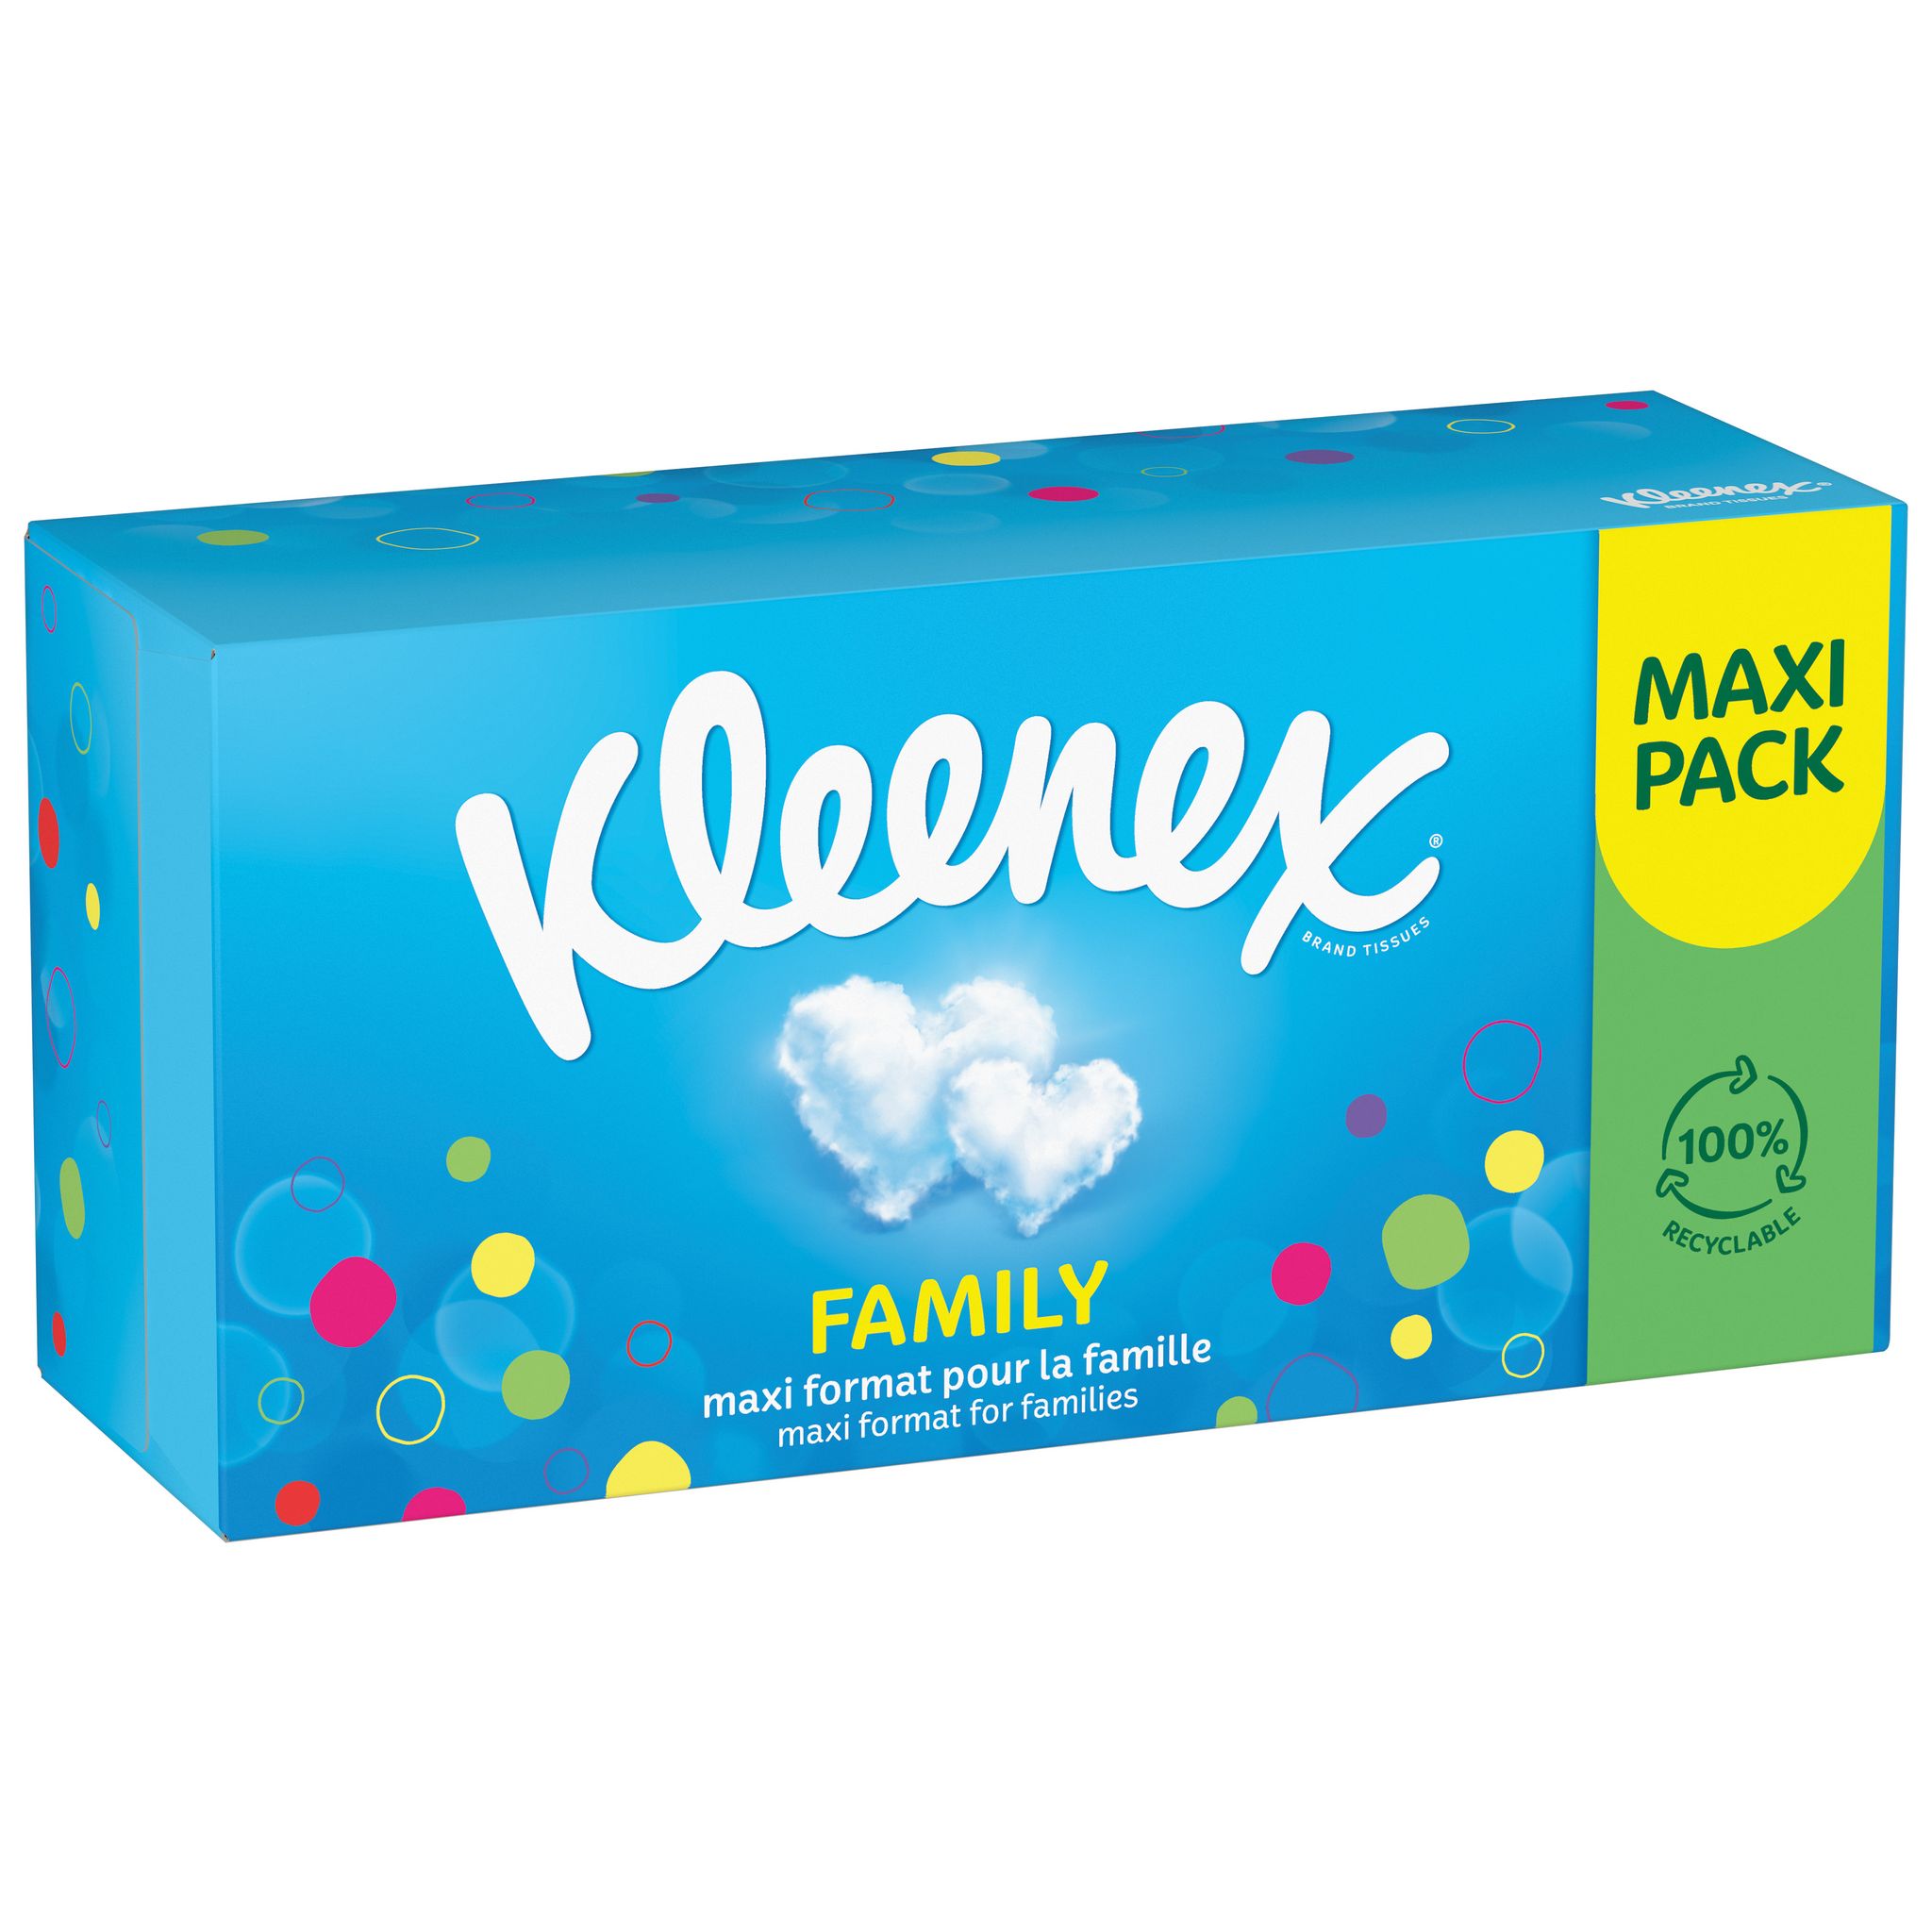 Kleenex Boîtes à mouchoirs La sécurité au quotidien 3-ply 140 lingettes